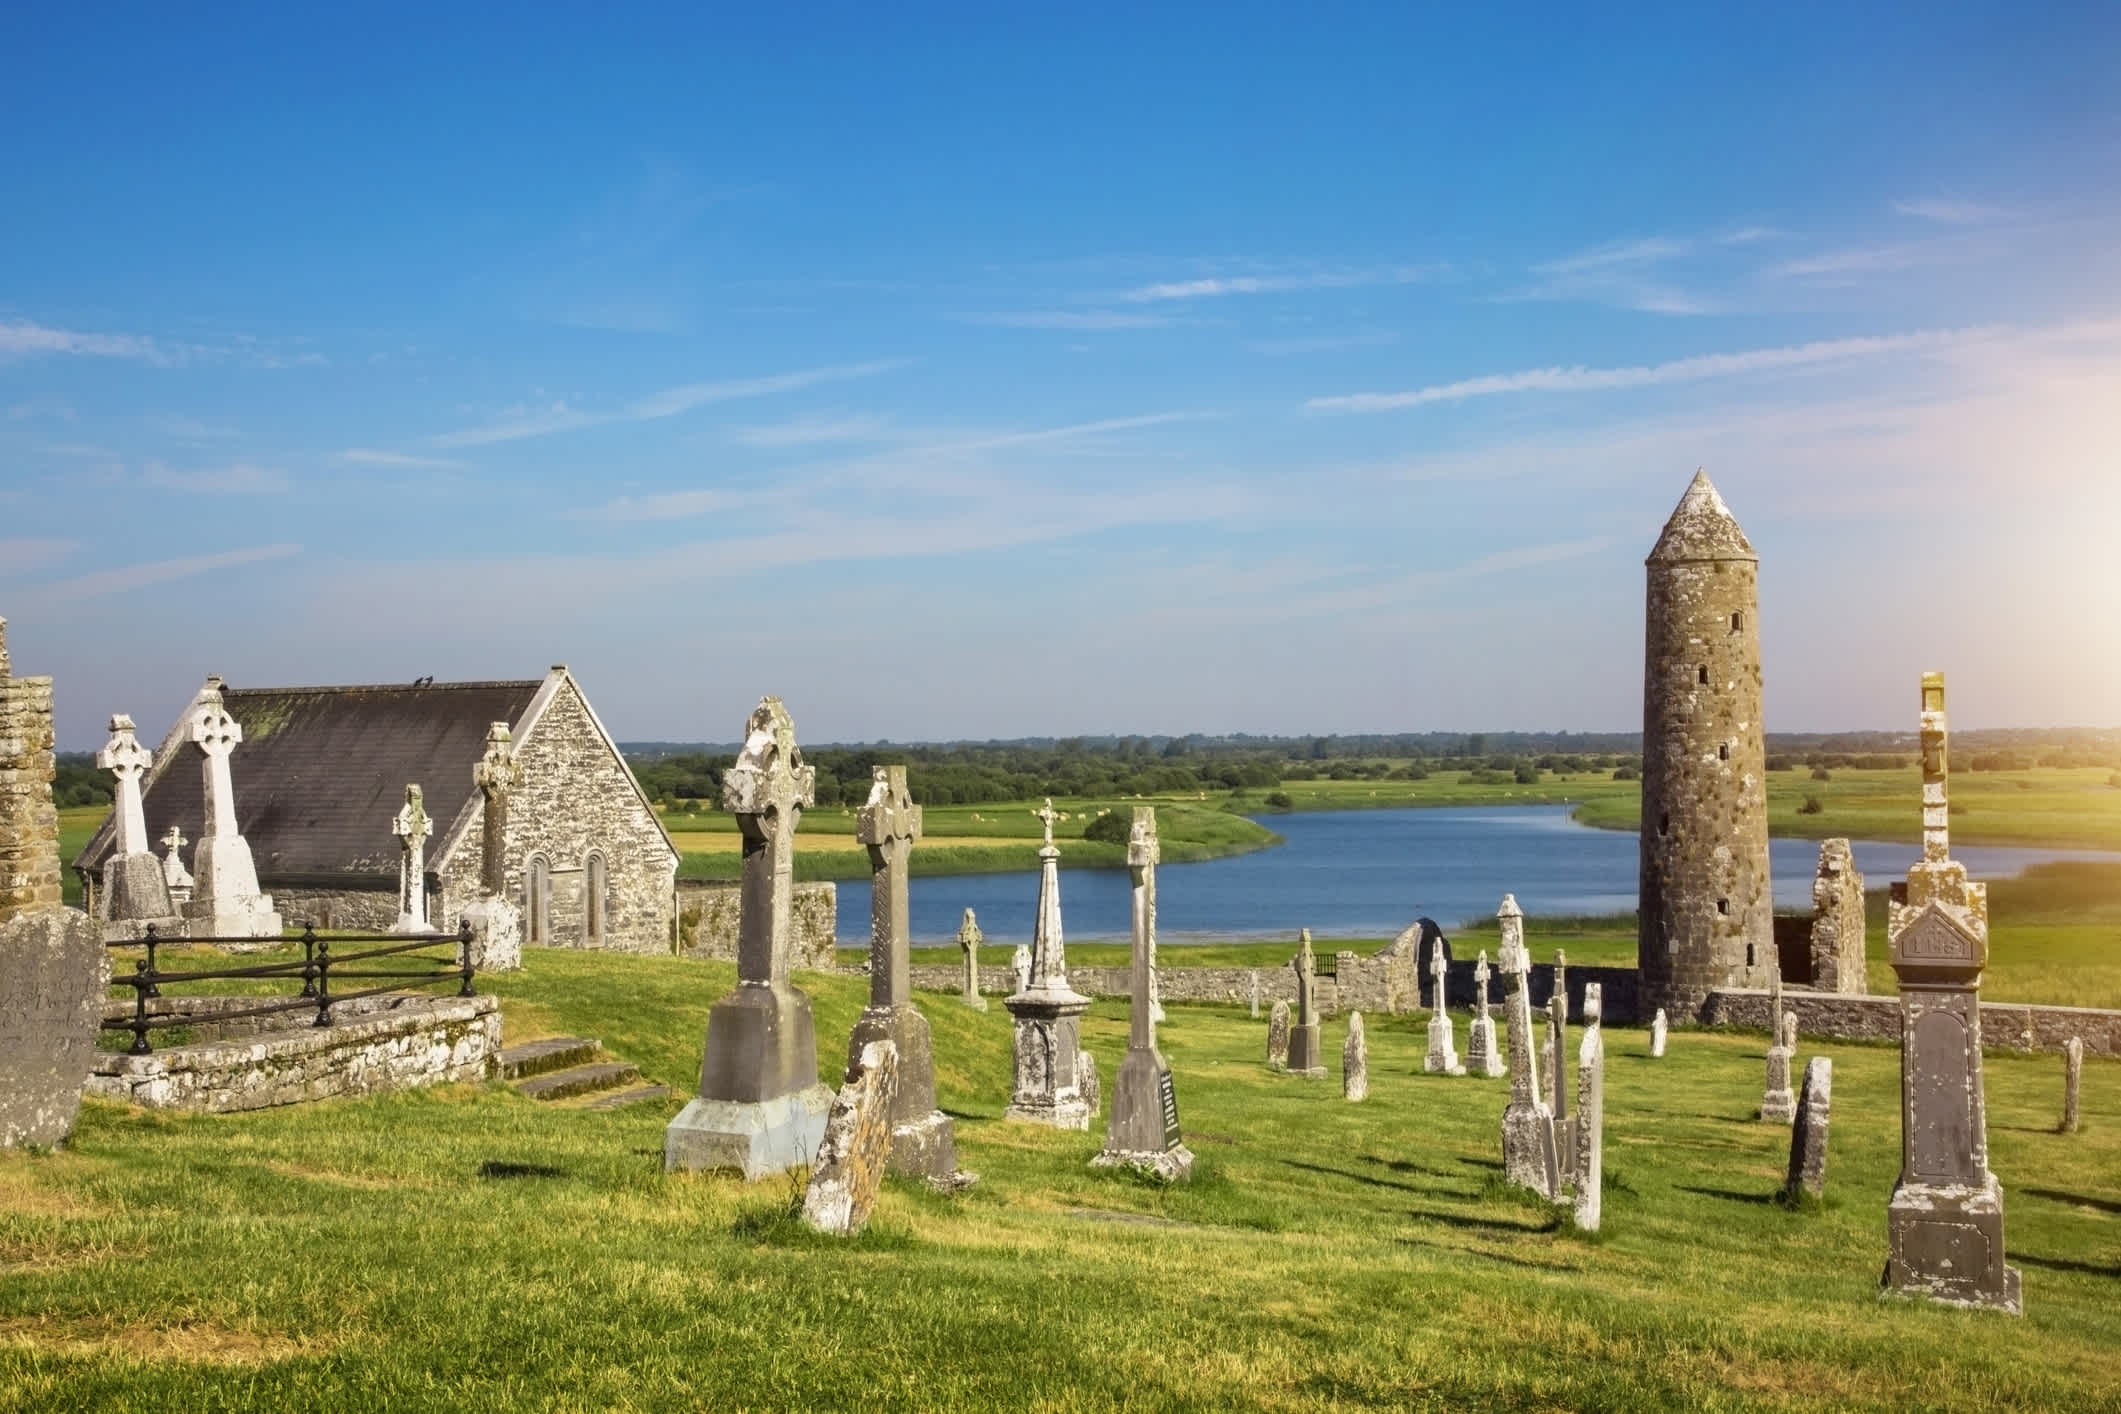 Cathédrale de Clonmacnoise avec ses croix et tombes typiques, Offaly, Irlande.

